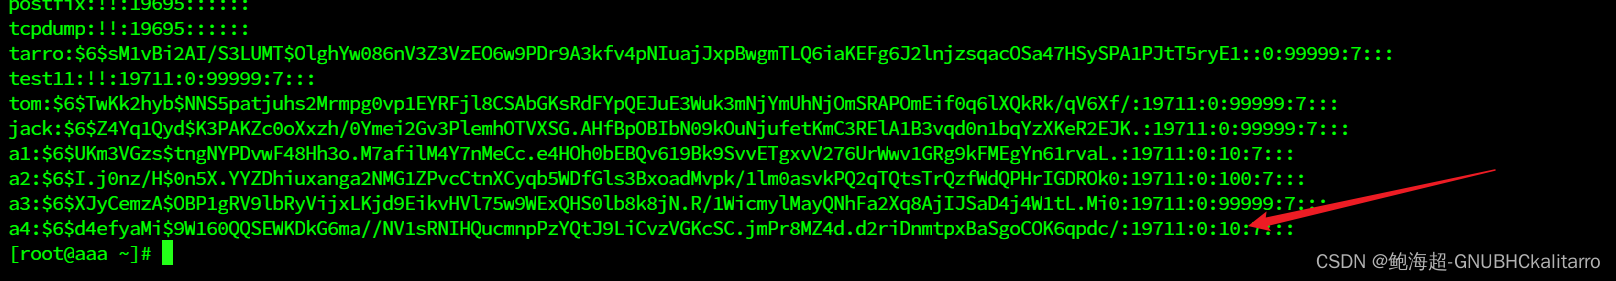 Linux：控制用户的密码—（有效期&&下次登录必须修改密码）